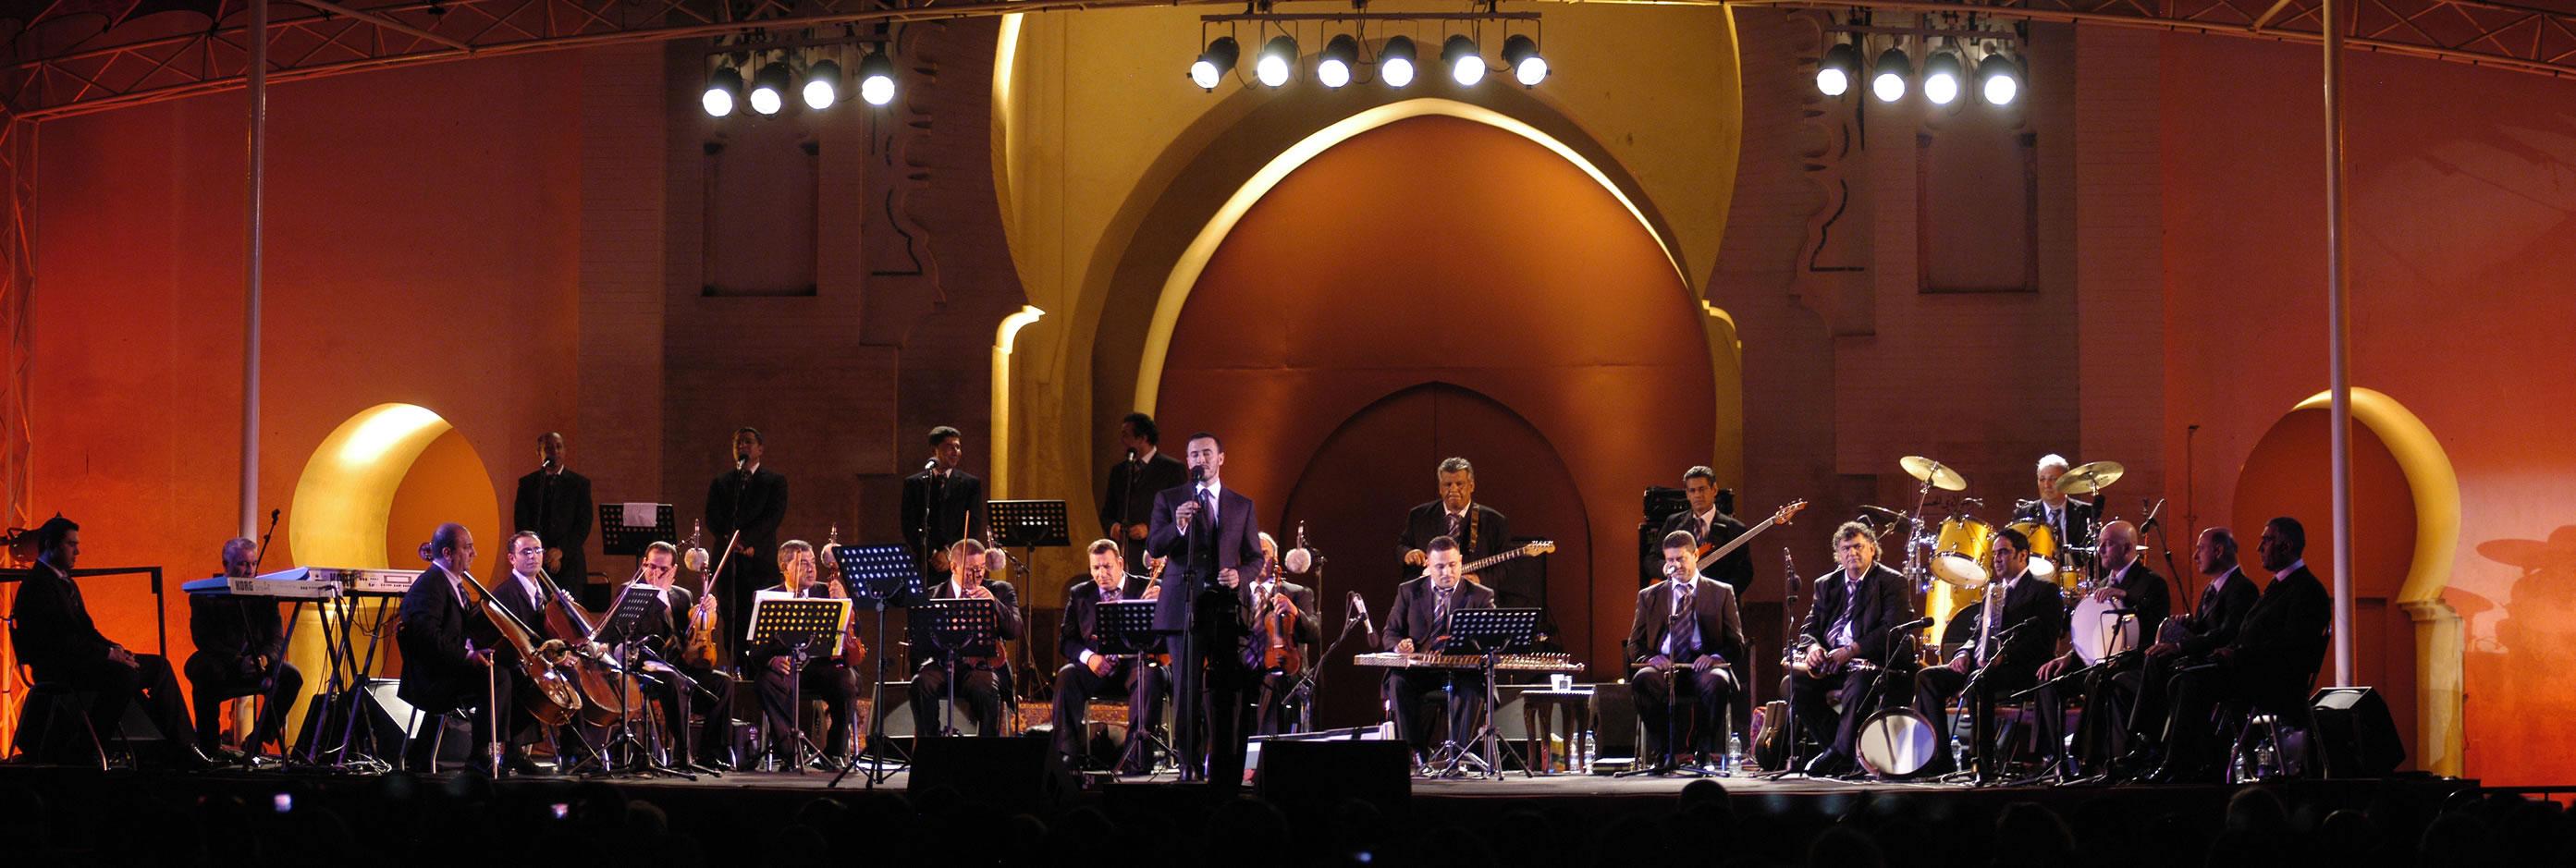 مهرجانات موسيقية في الوطن العربي - مهرجان فاس للموسيقى العالمية العريقة